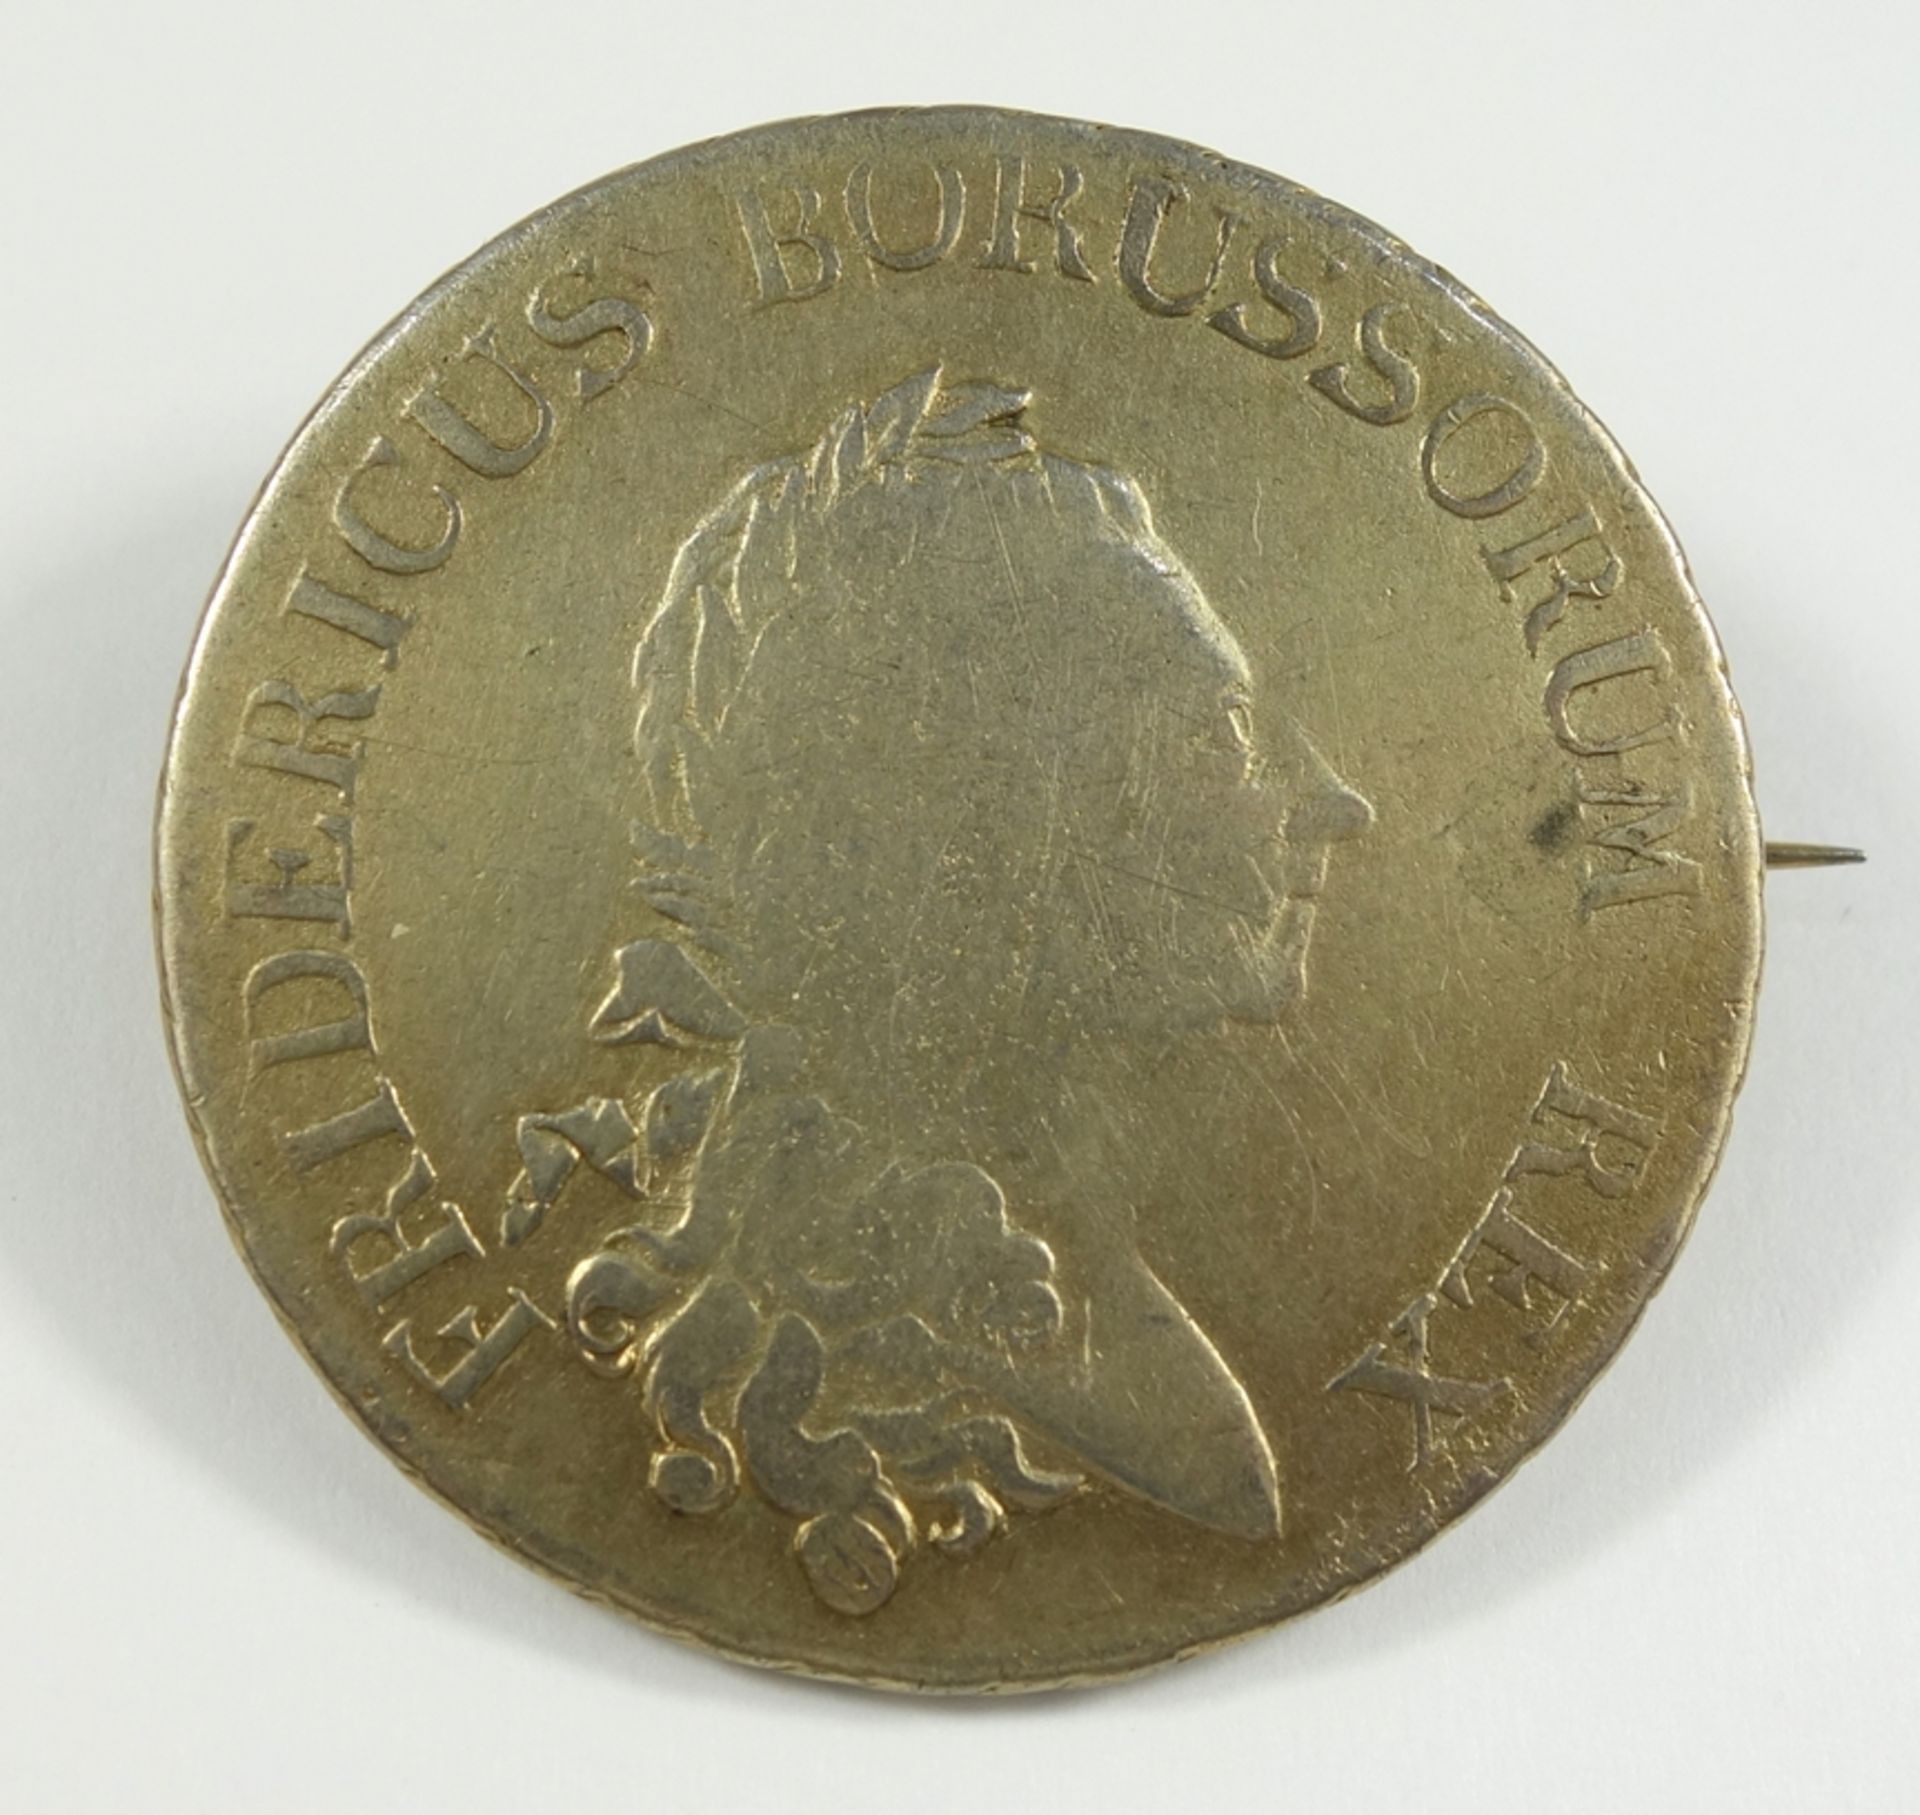 Brosche "Ein Reichsthaler 1786" König Friedrich der Große - Sterbetaler, Silber mit Resten von